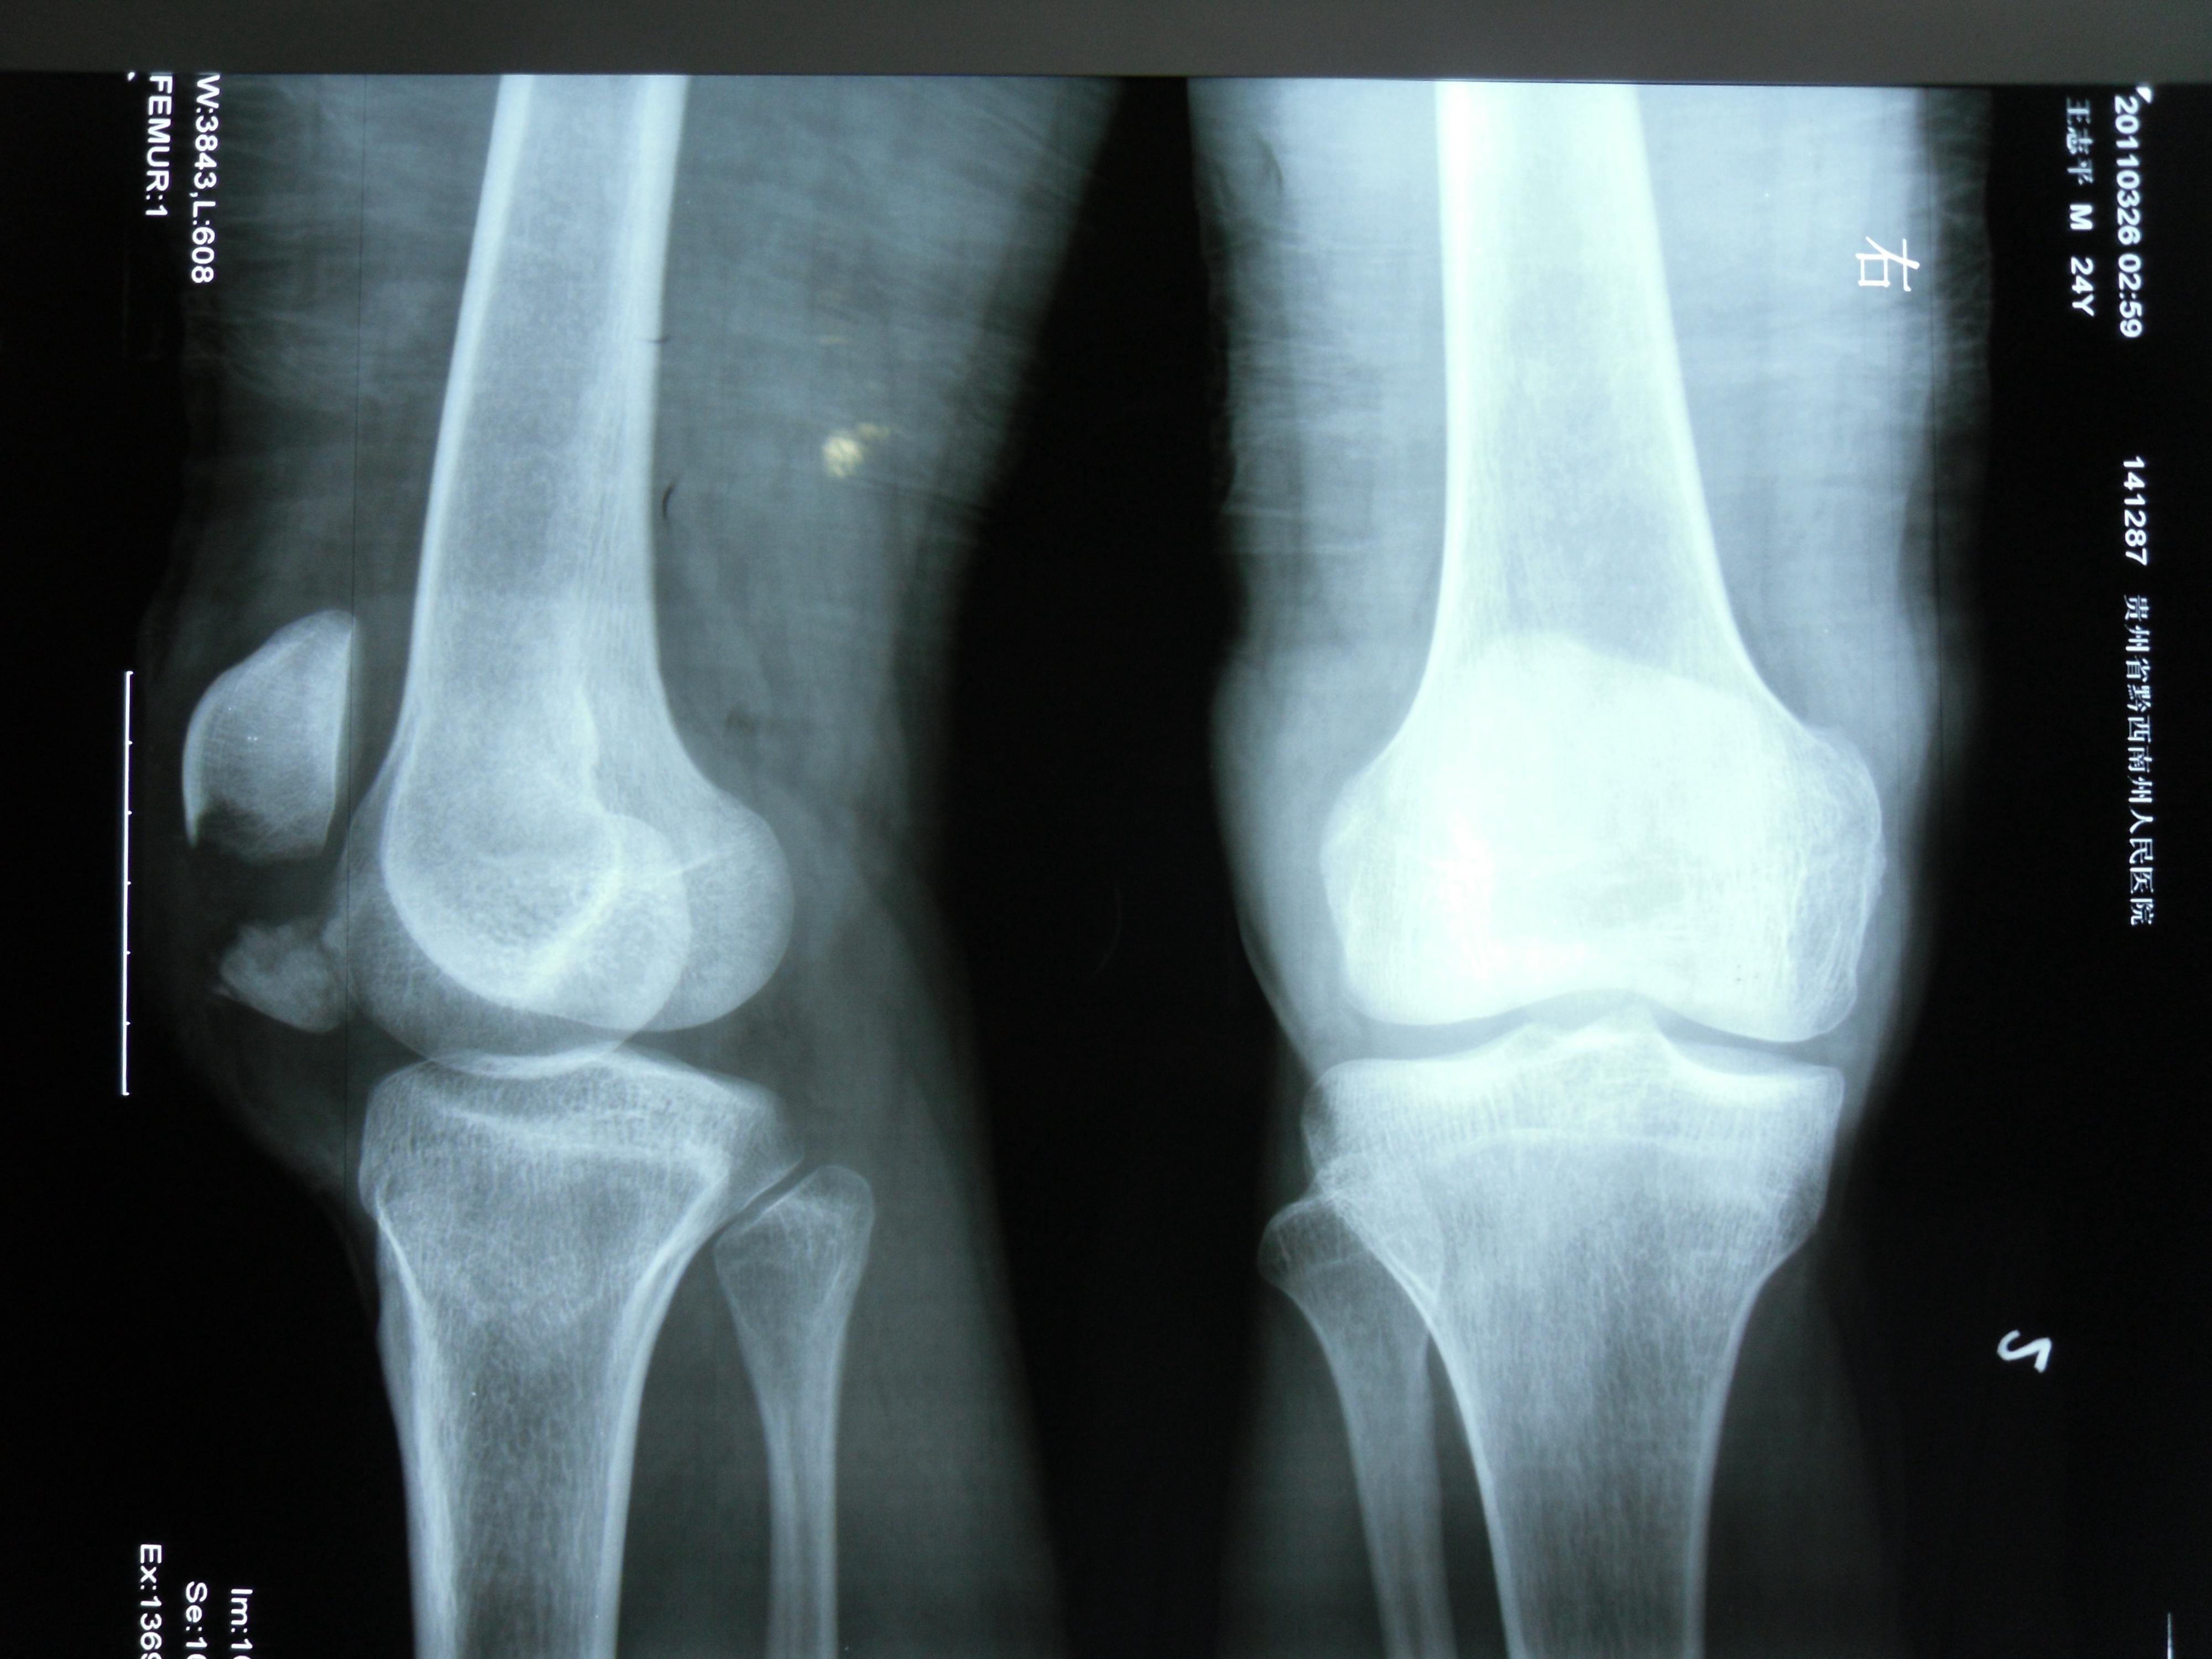 膝盖骨折片子真实图图片